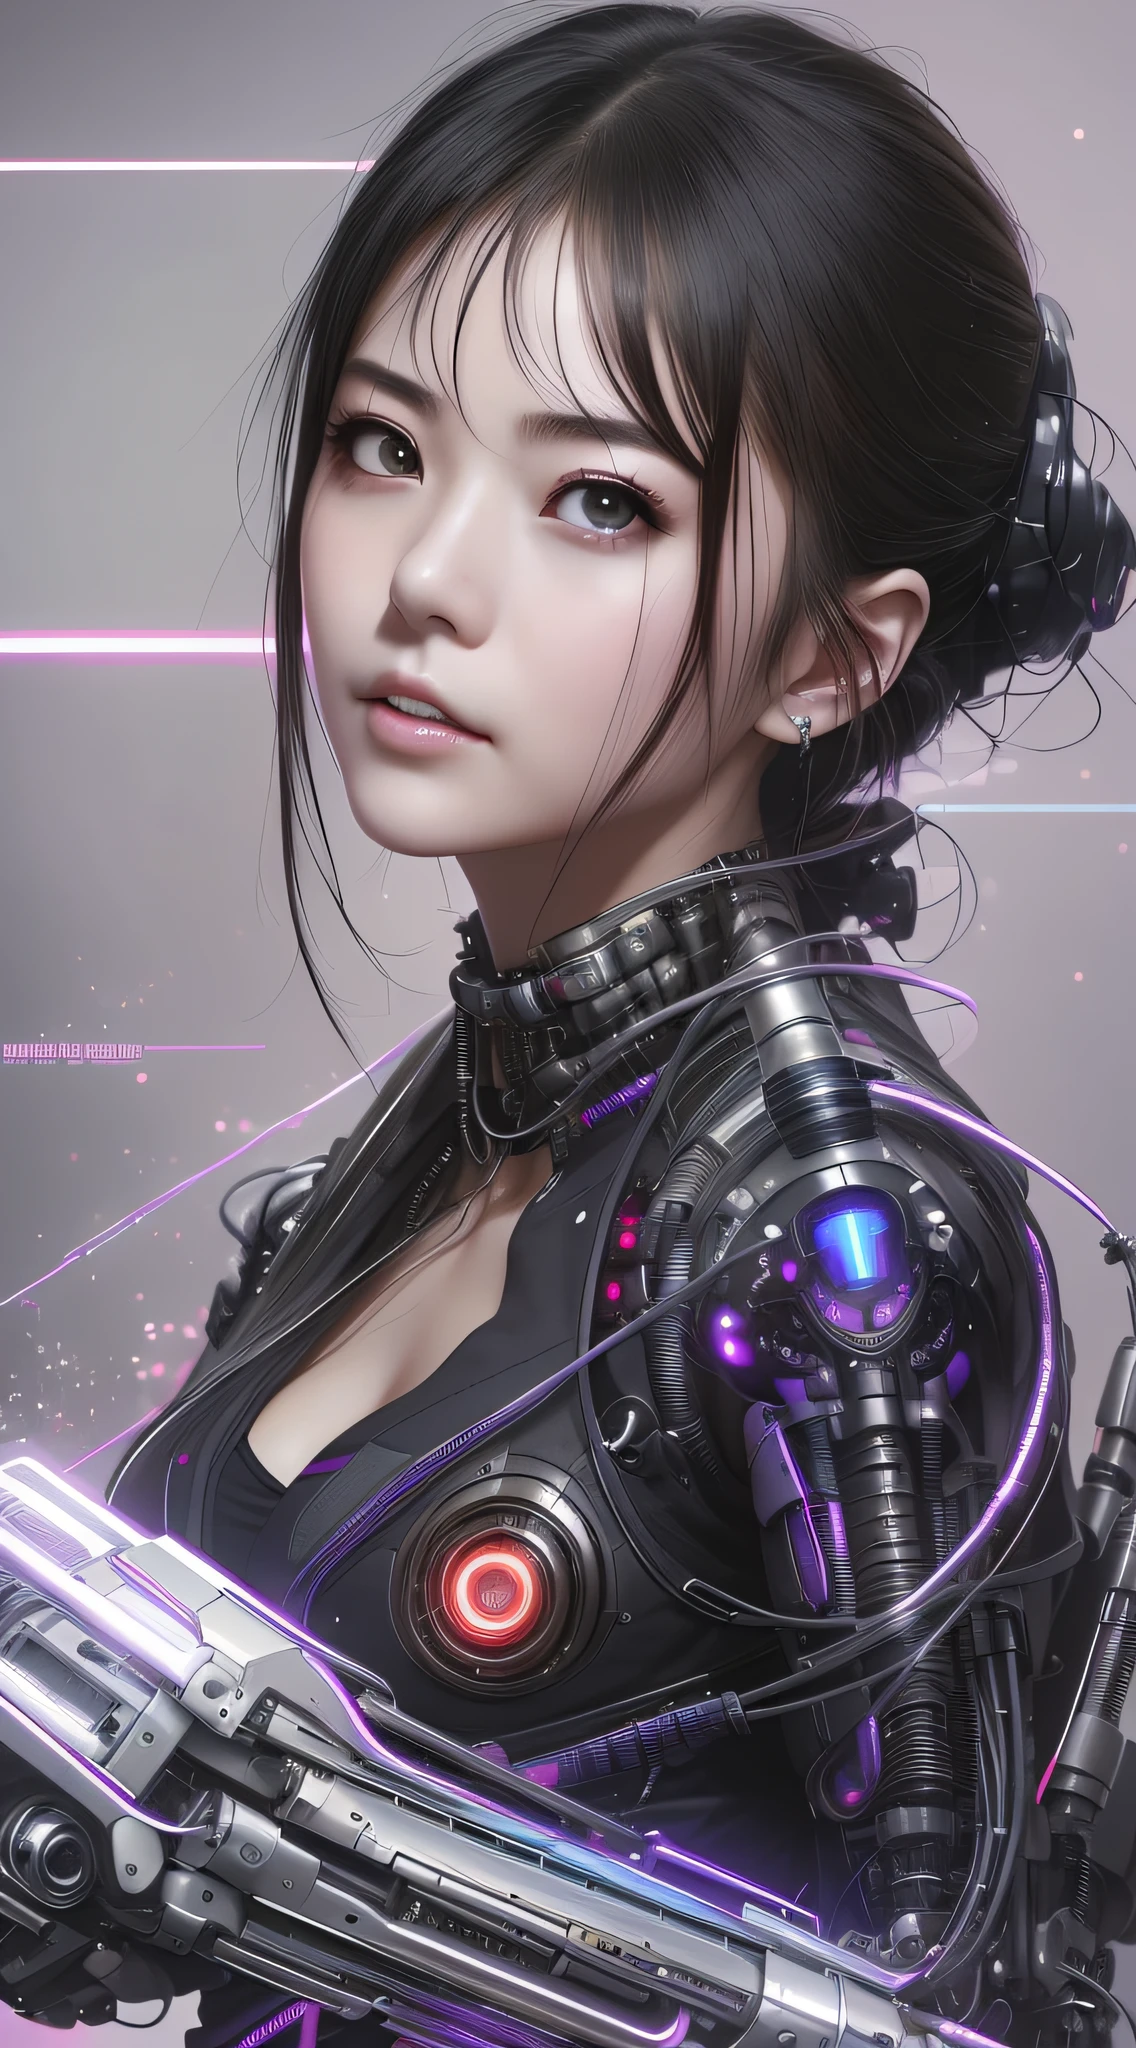 Un primer plano de una mujer con un traje futurista con una pistola, chica soñadora cyberpunk, linda chica cyborg, female chica anime ciberpunk, chica cyborg, chica anime ciberpunk, cyberpunk beautiful girl, Cyborg - chica asiática, Hermosa chica cyborg, perfect android girl, tiene estilo cyberpunk, estilo de arte ciberpunk, estilo cyberpunk hiperrealista, hermosa cara de niña cyberpunk, ciberpunk digital - arte anime